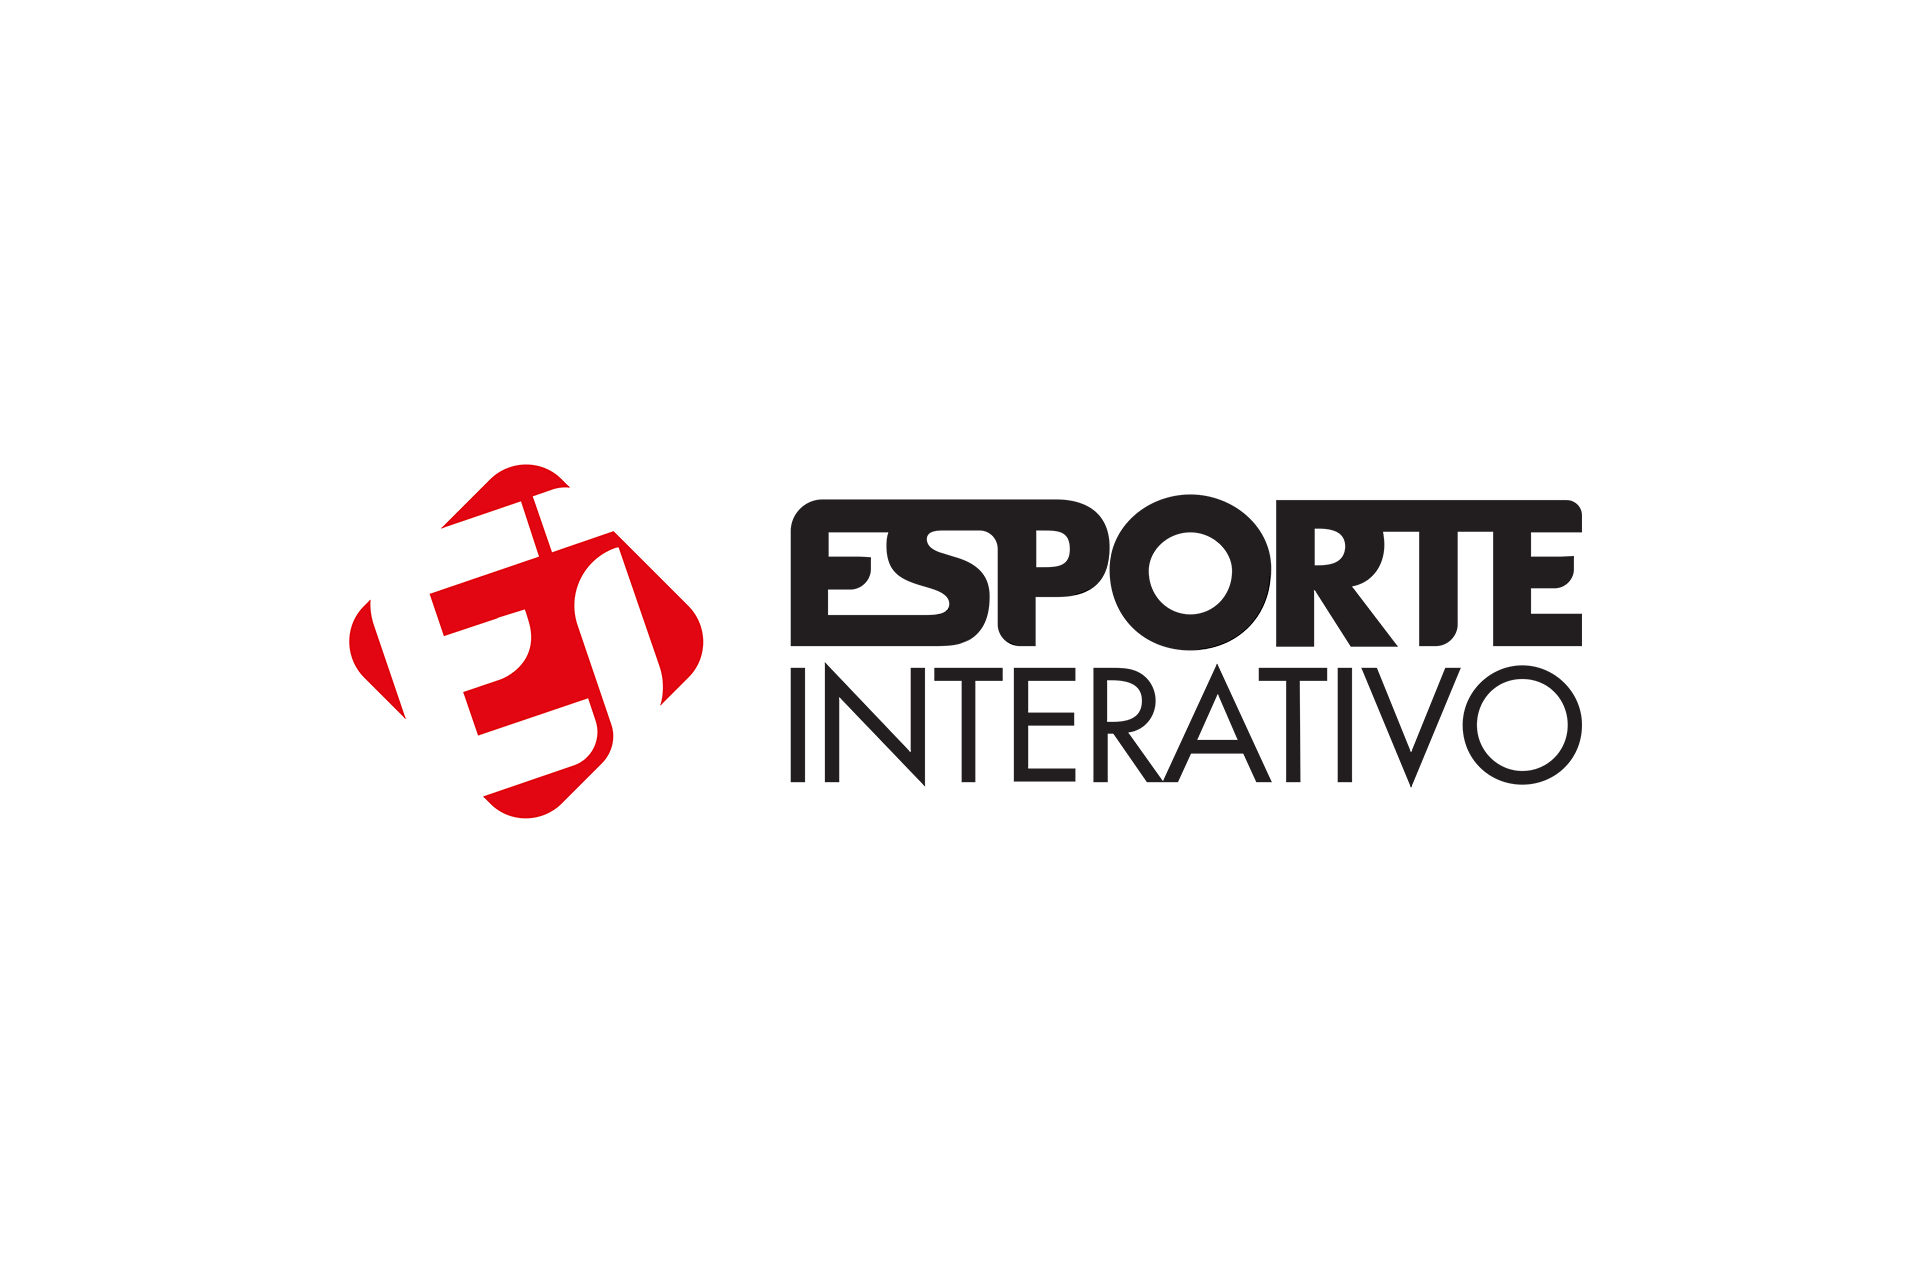 Esporte Interativo vai exibir jogos da Champions League no Space - Portal  Mídia Esporte